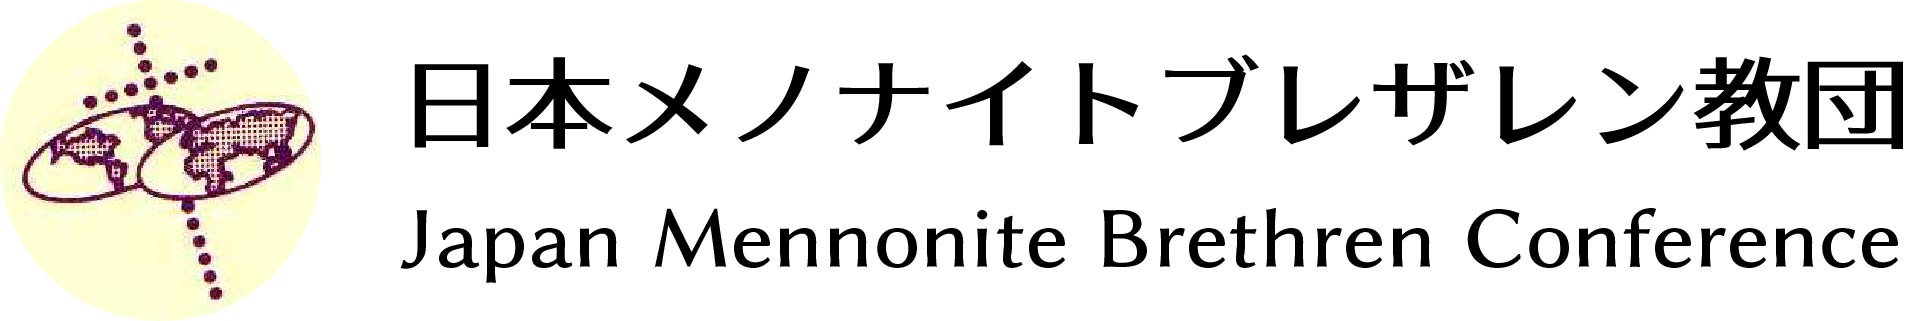 日本メノナイトブレザレン教団